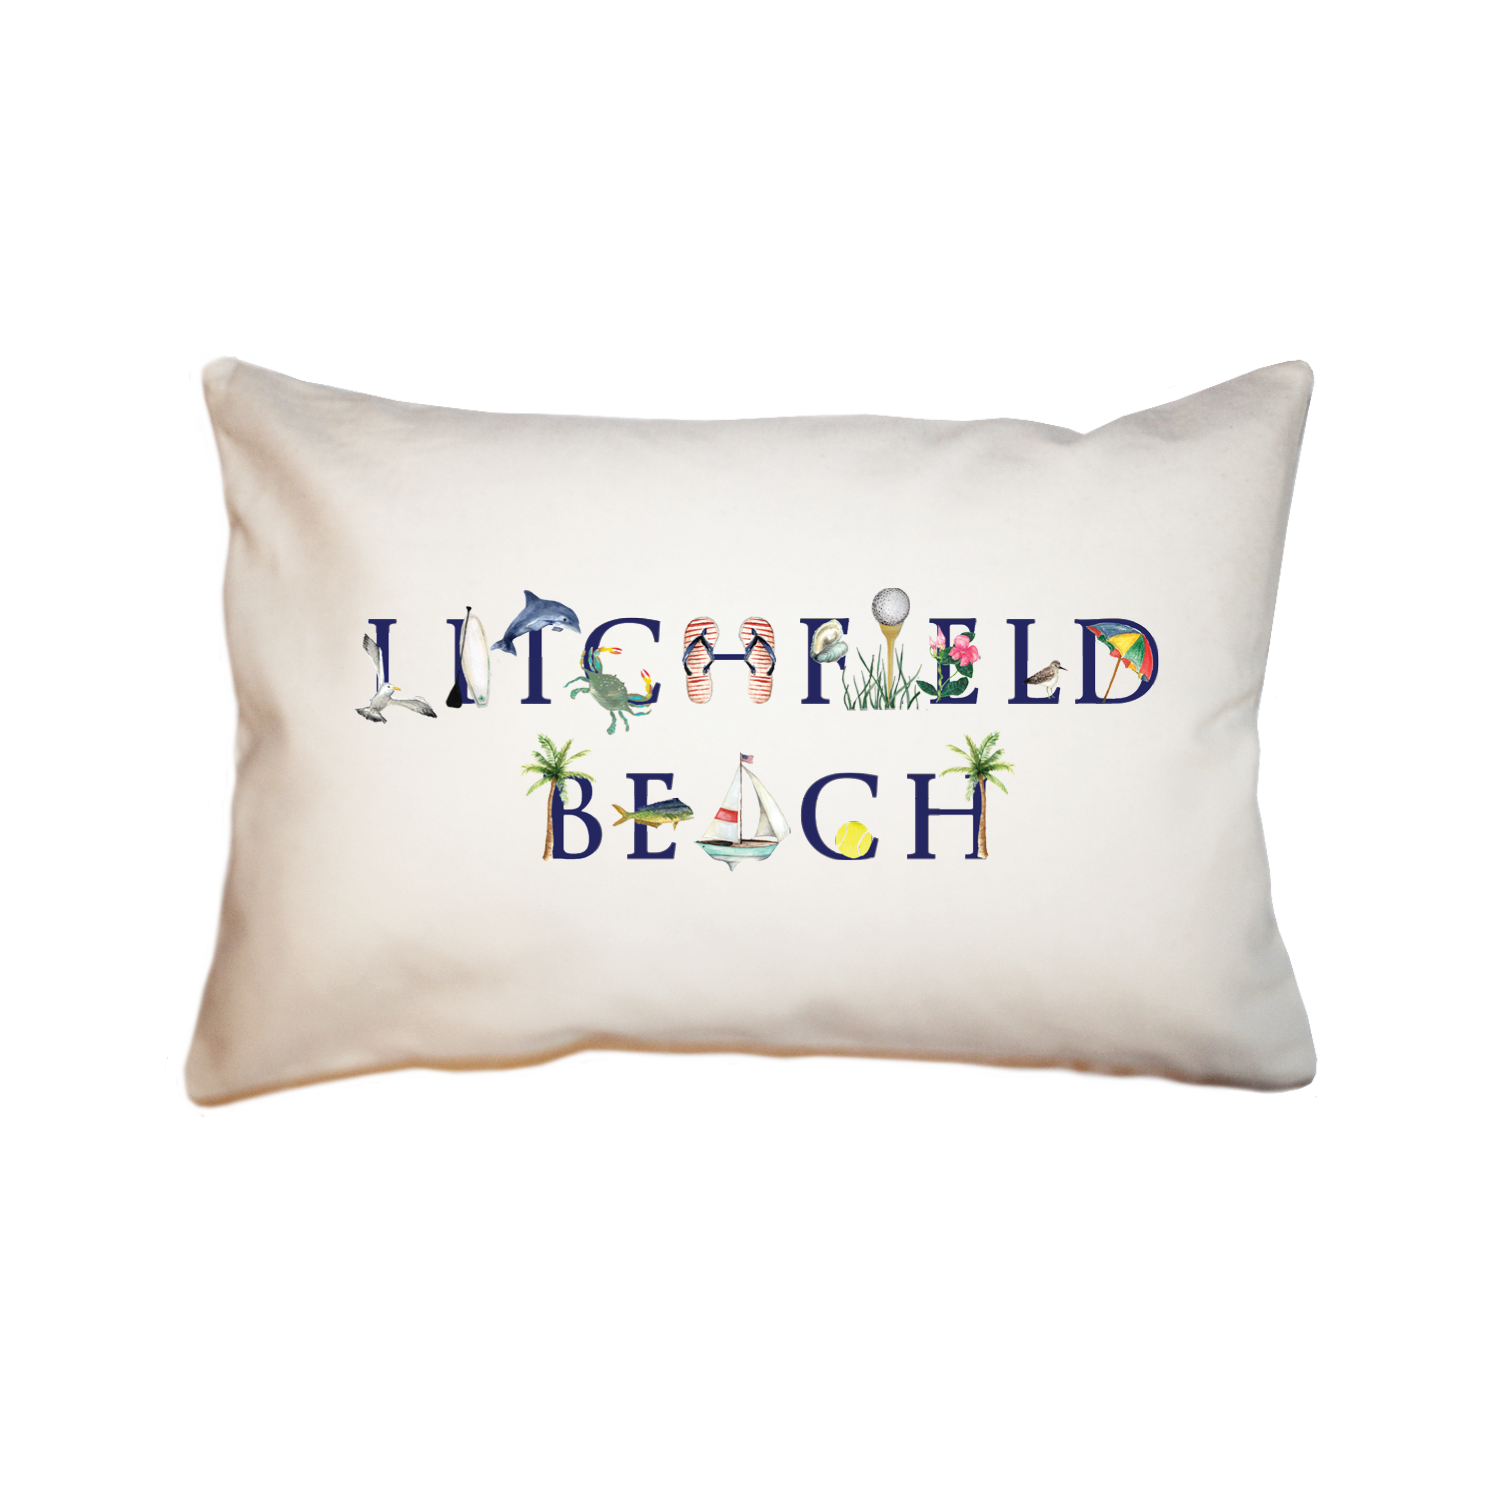 litchfield beach large rectangle pillow